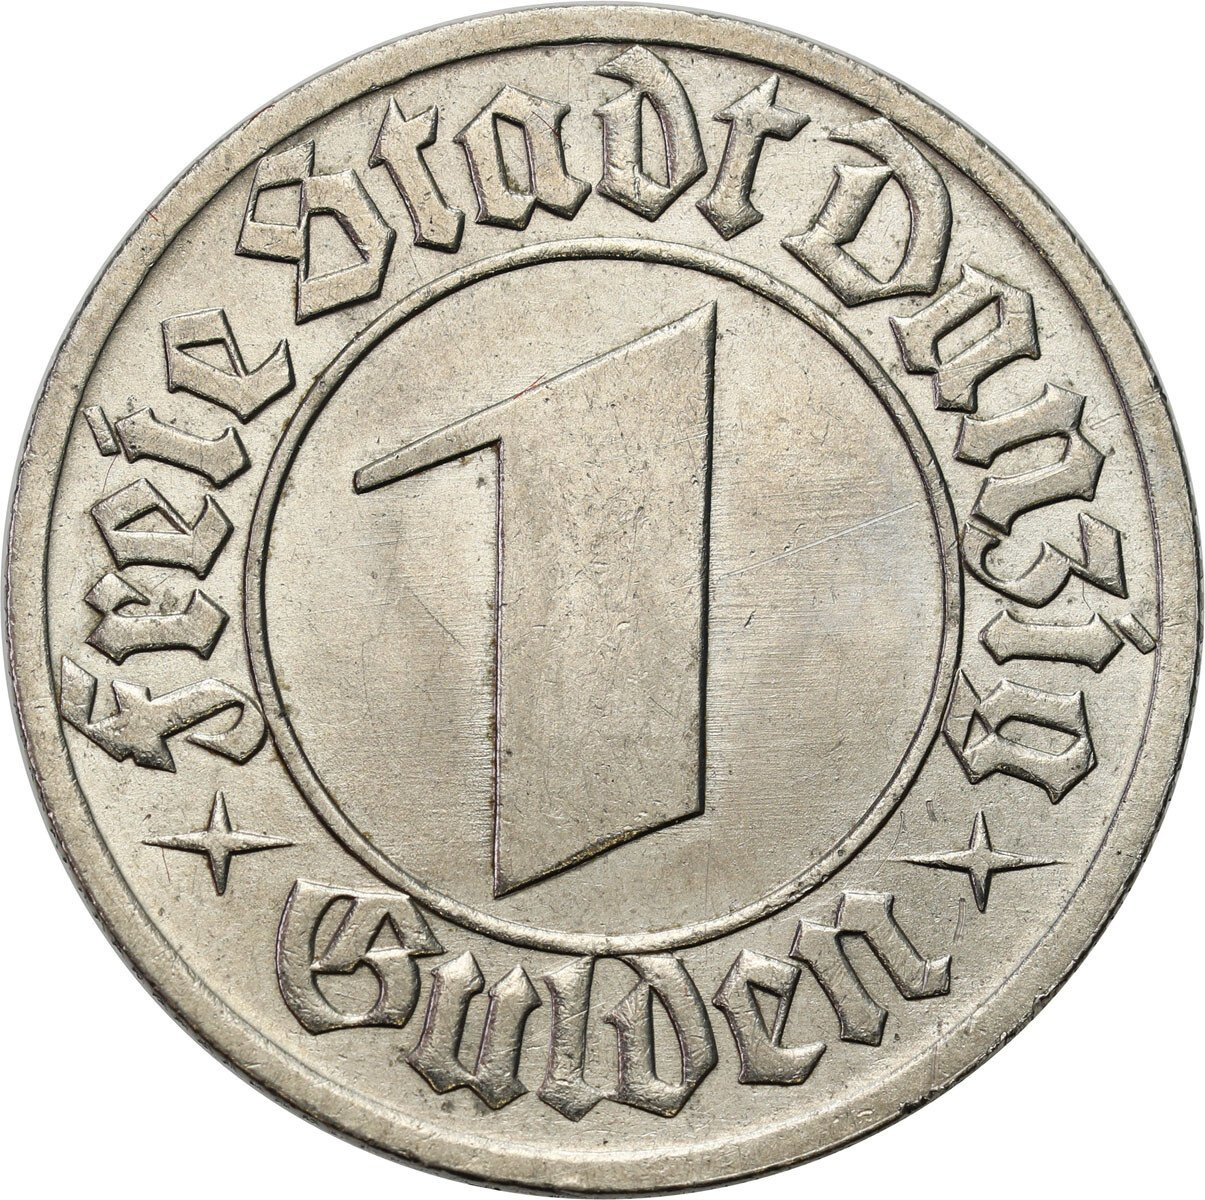 Wolne Miasto Gdańsk/Danzig. 1 Gulden 1932, Berlin - PIĘKNY